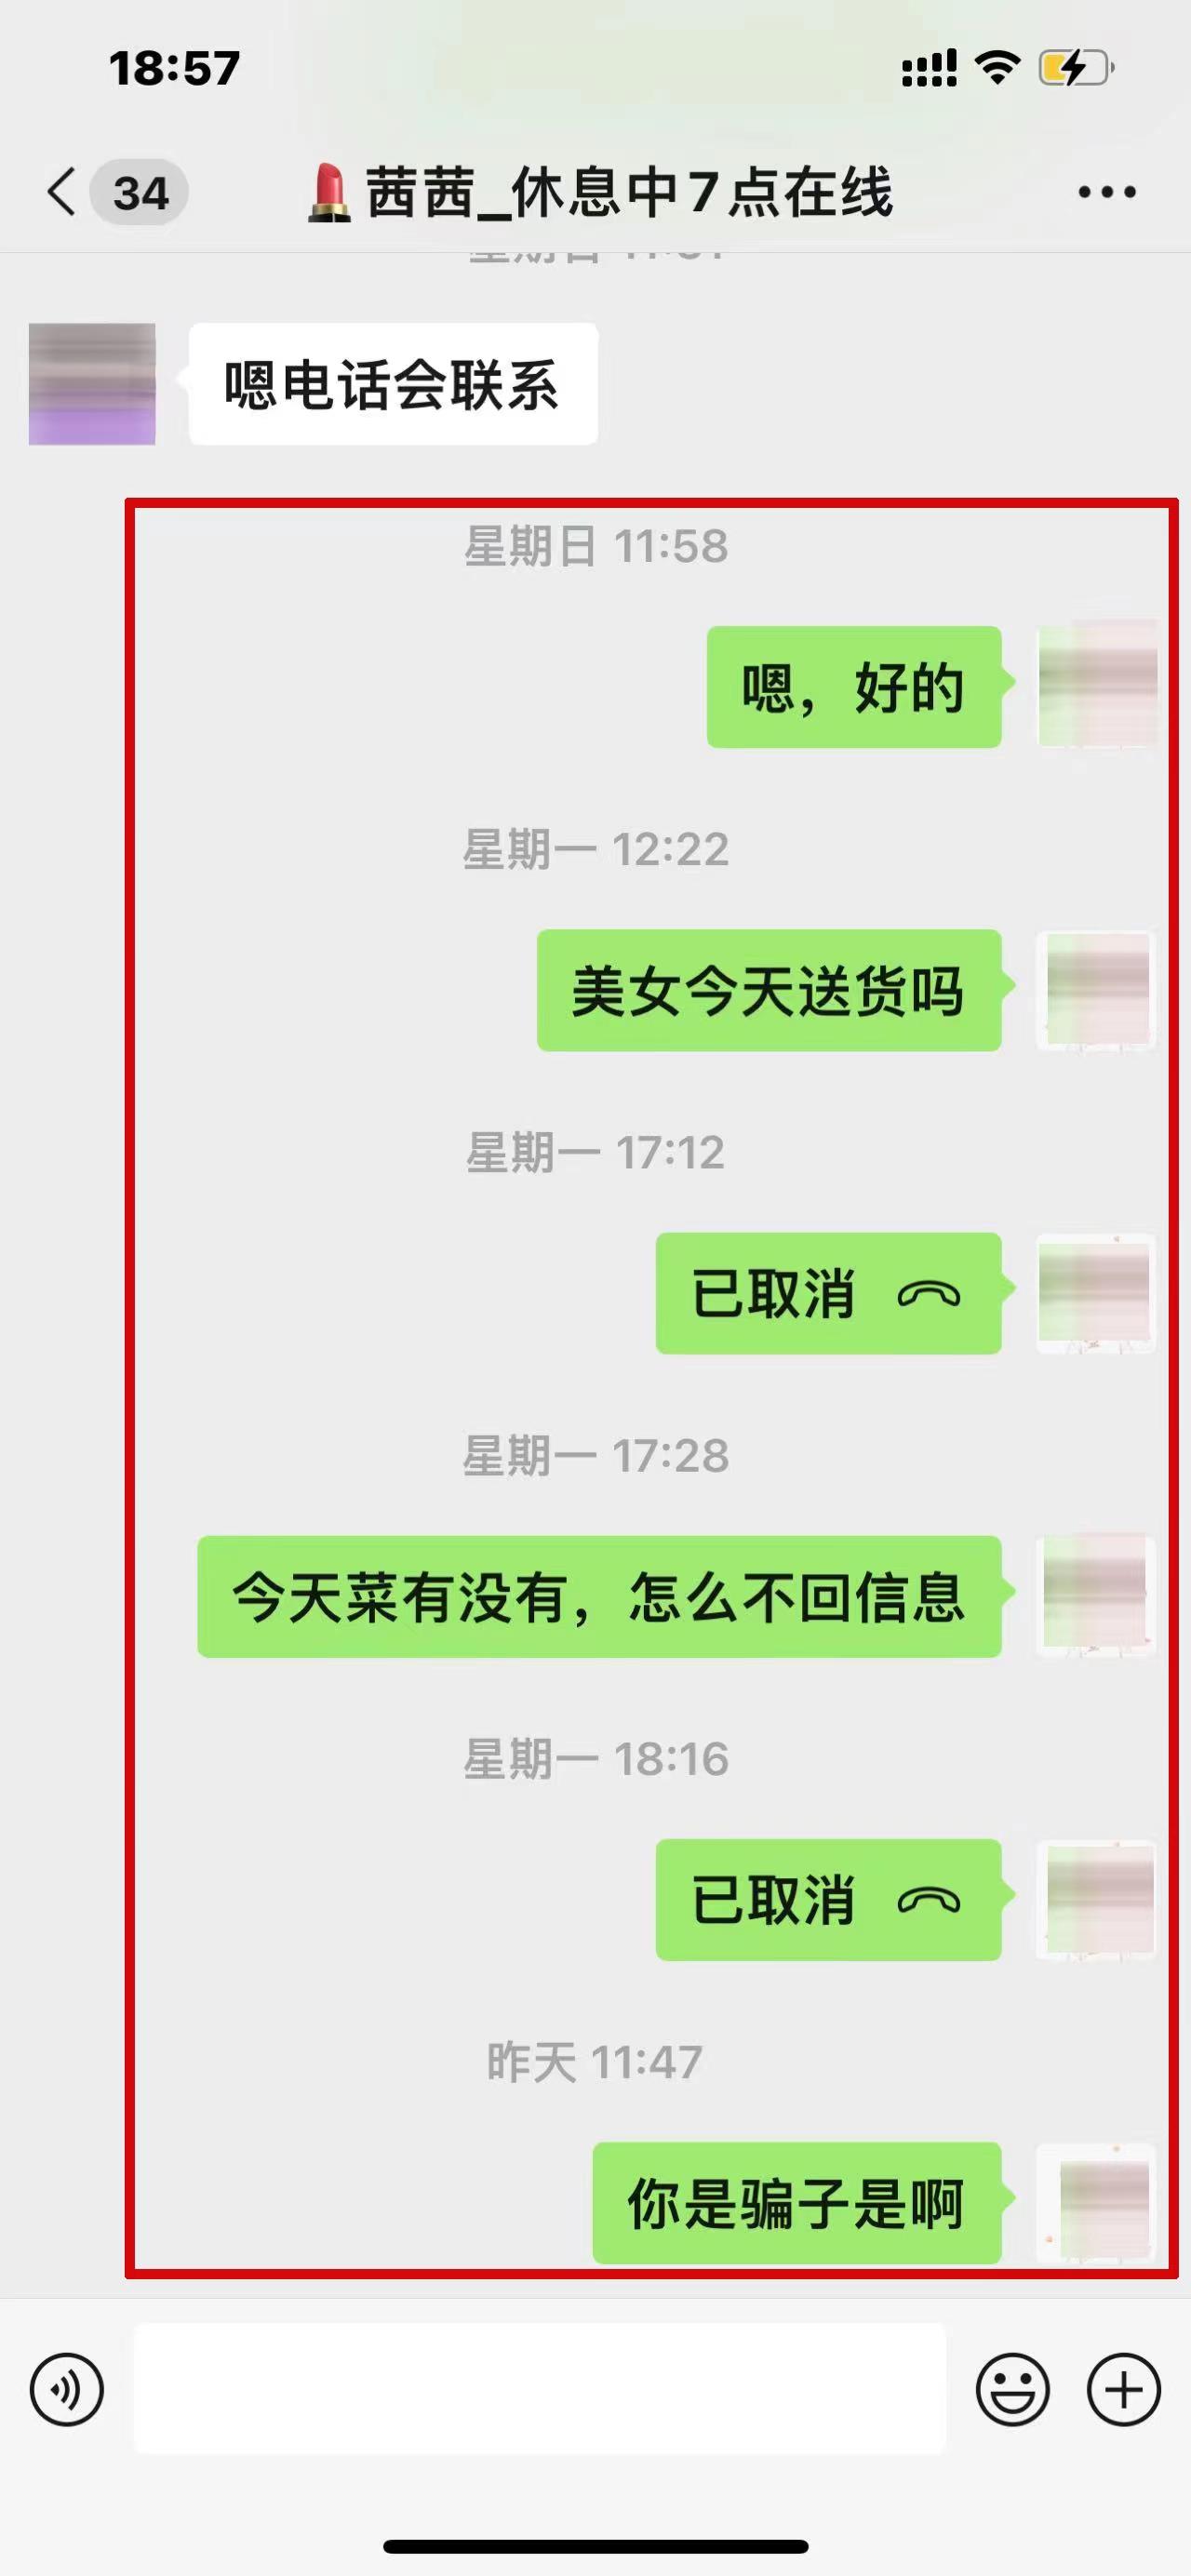 下单迟迟不到 群聊突然解散……上海警方侦破一起网购蔬菜诈骗案